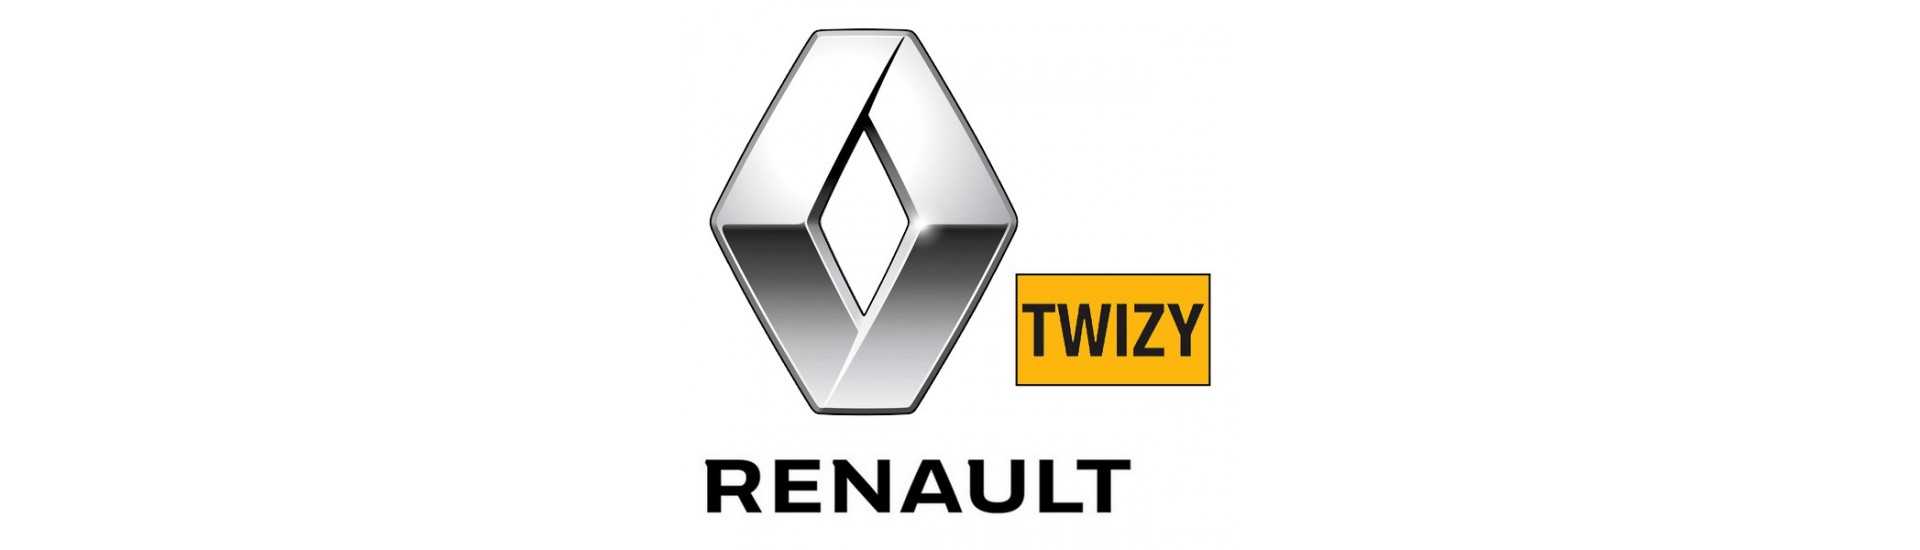 External door handle best car price without license Renault